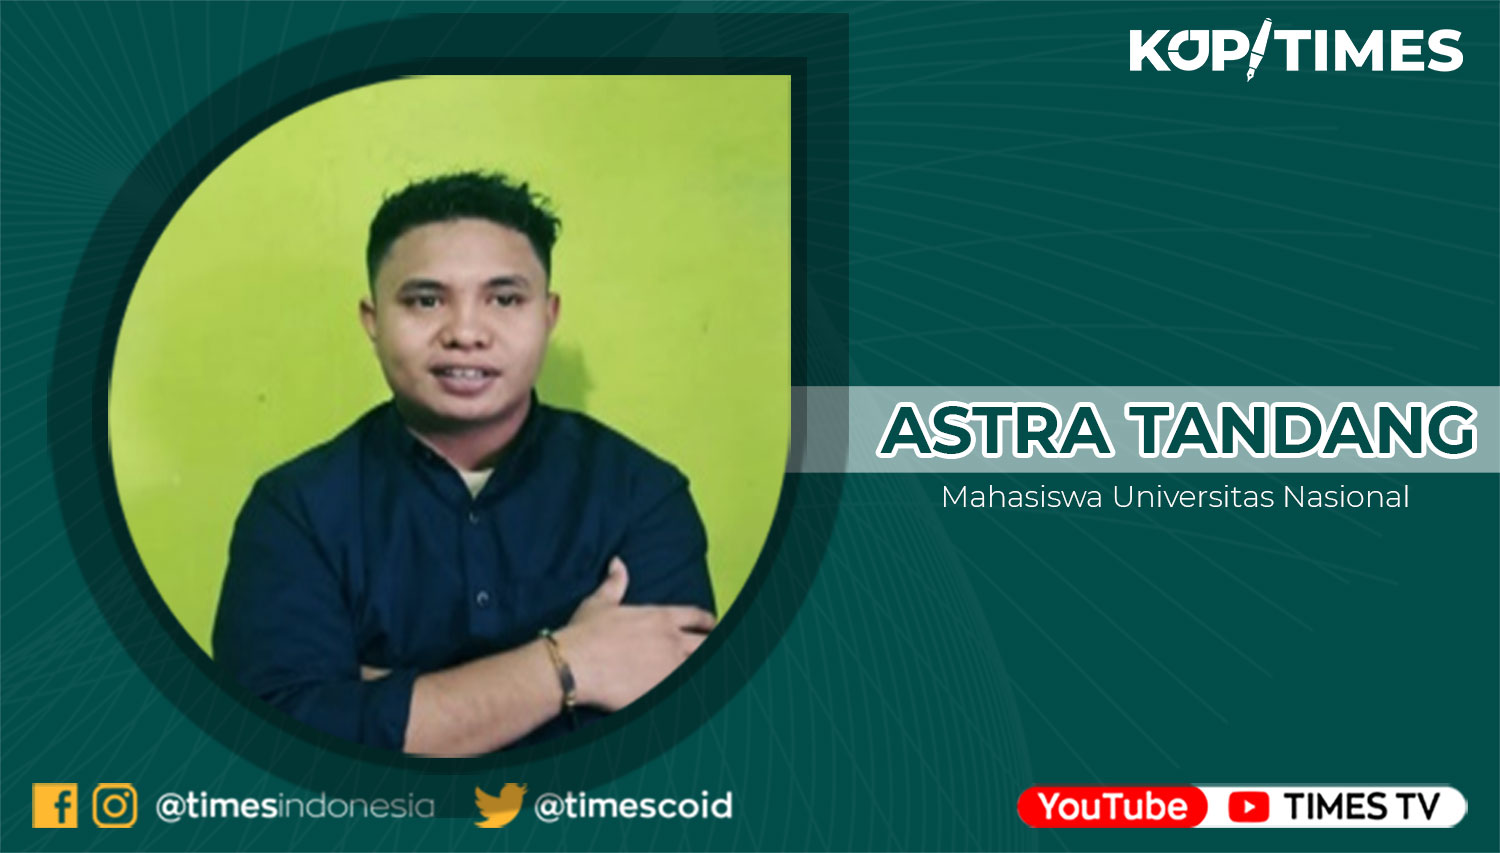 Astra Tandang, Penggiat Desa, Alumnus Ilmu Pemerintahan STPMD “APMD”, Yogyakarta.